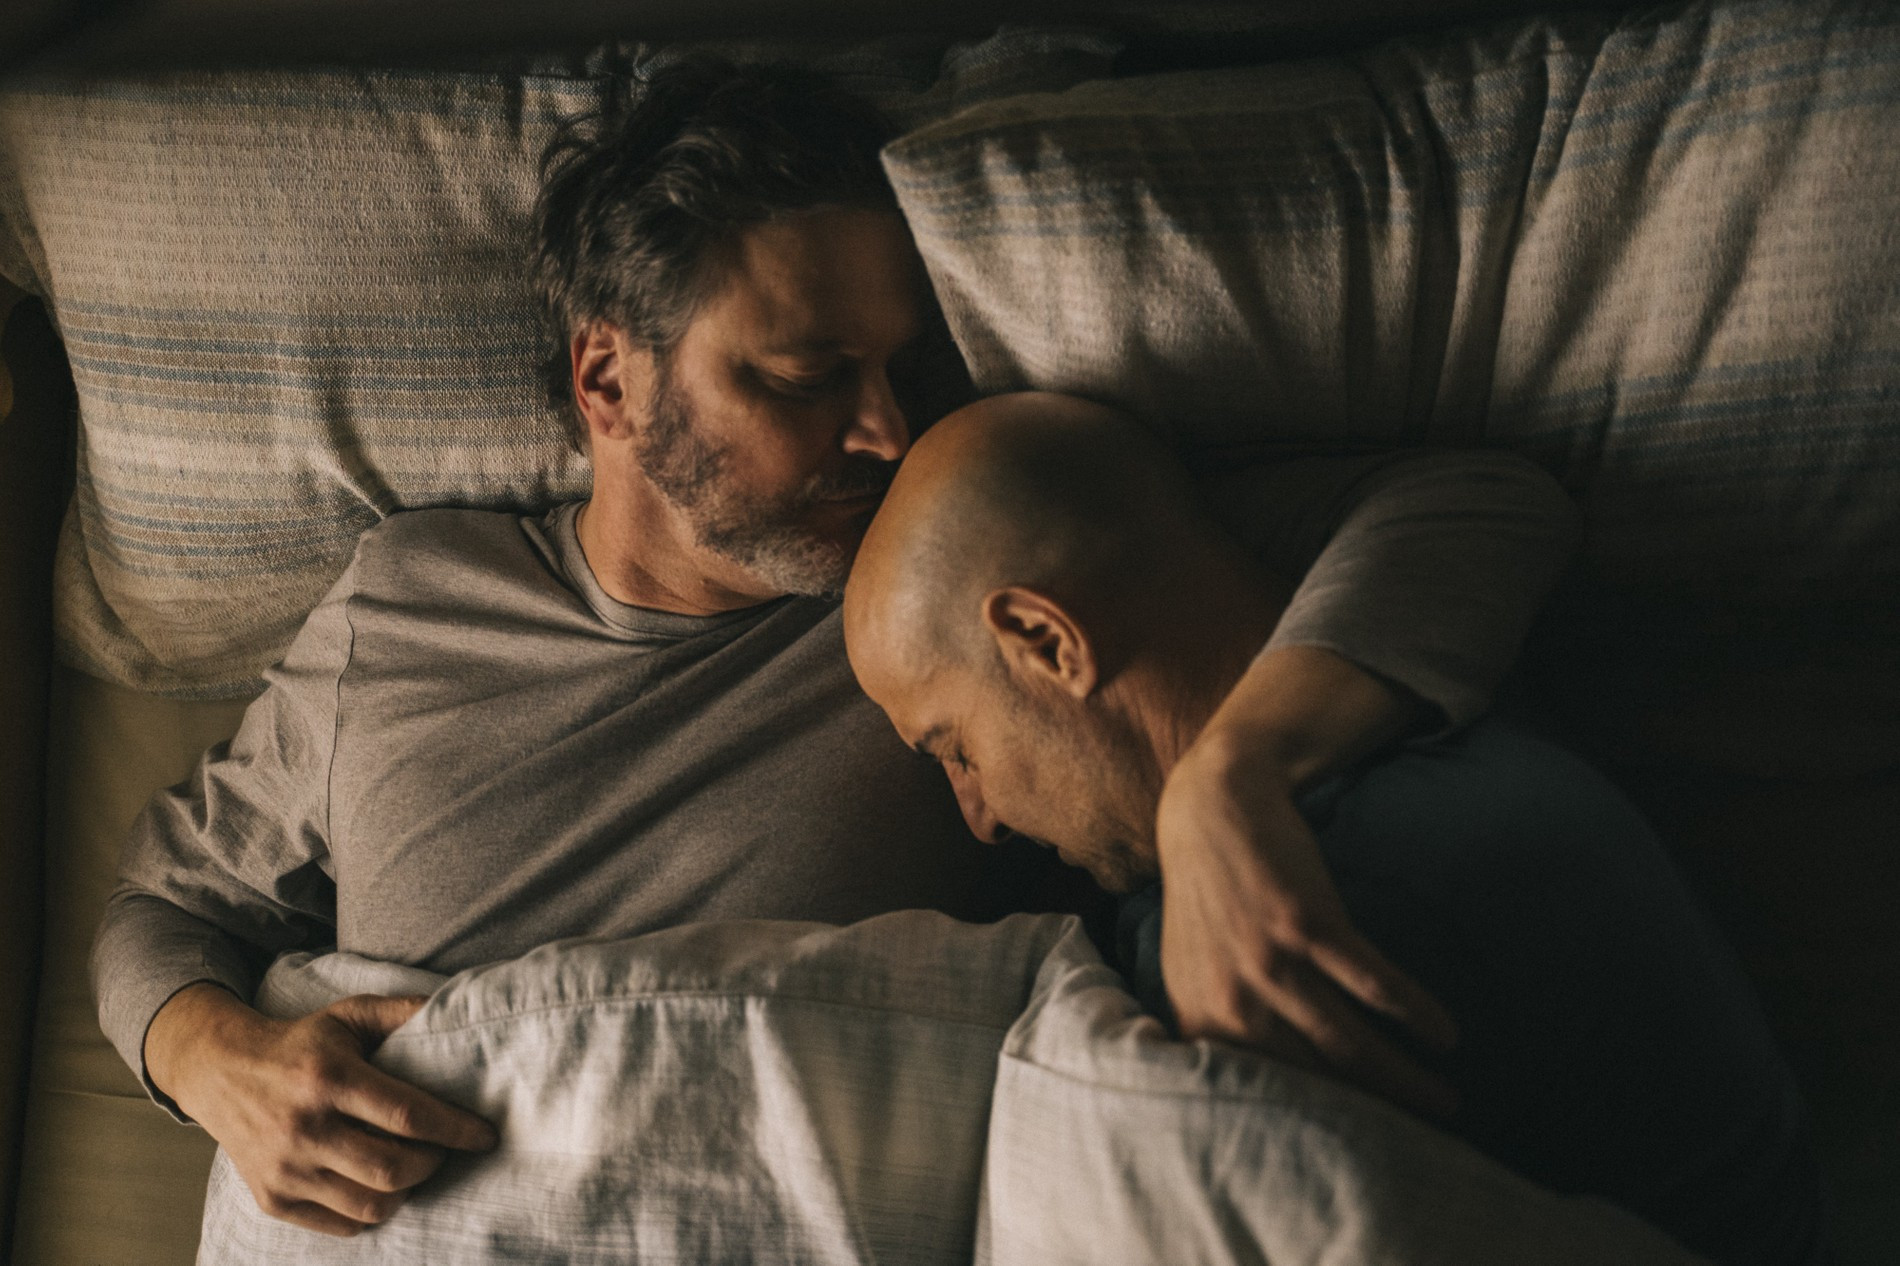 В российском прокате из новой гей-драмы с Колином Фертом и Стэнли Туччи  вырезали постельные сцены